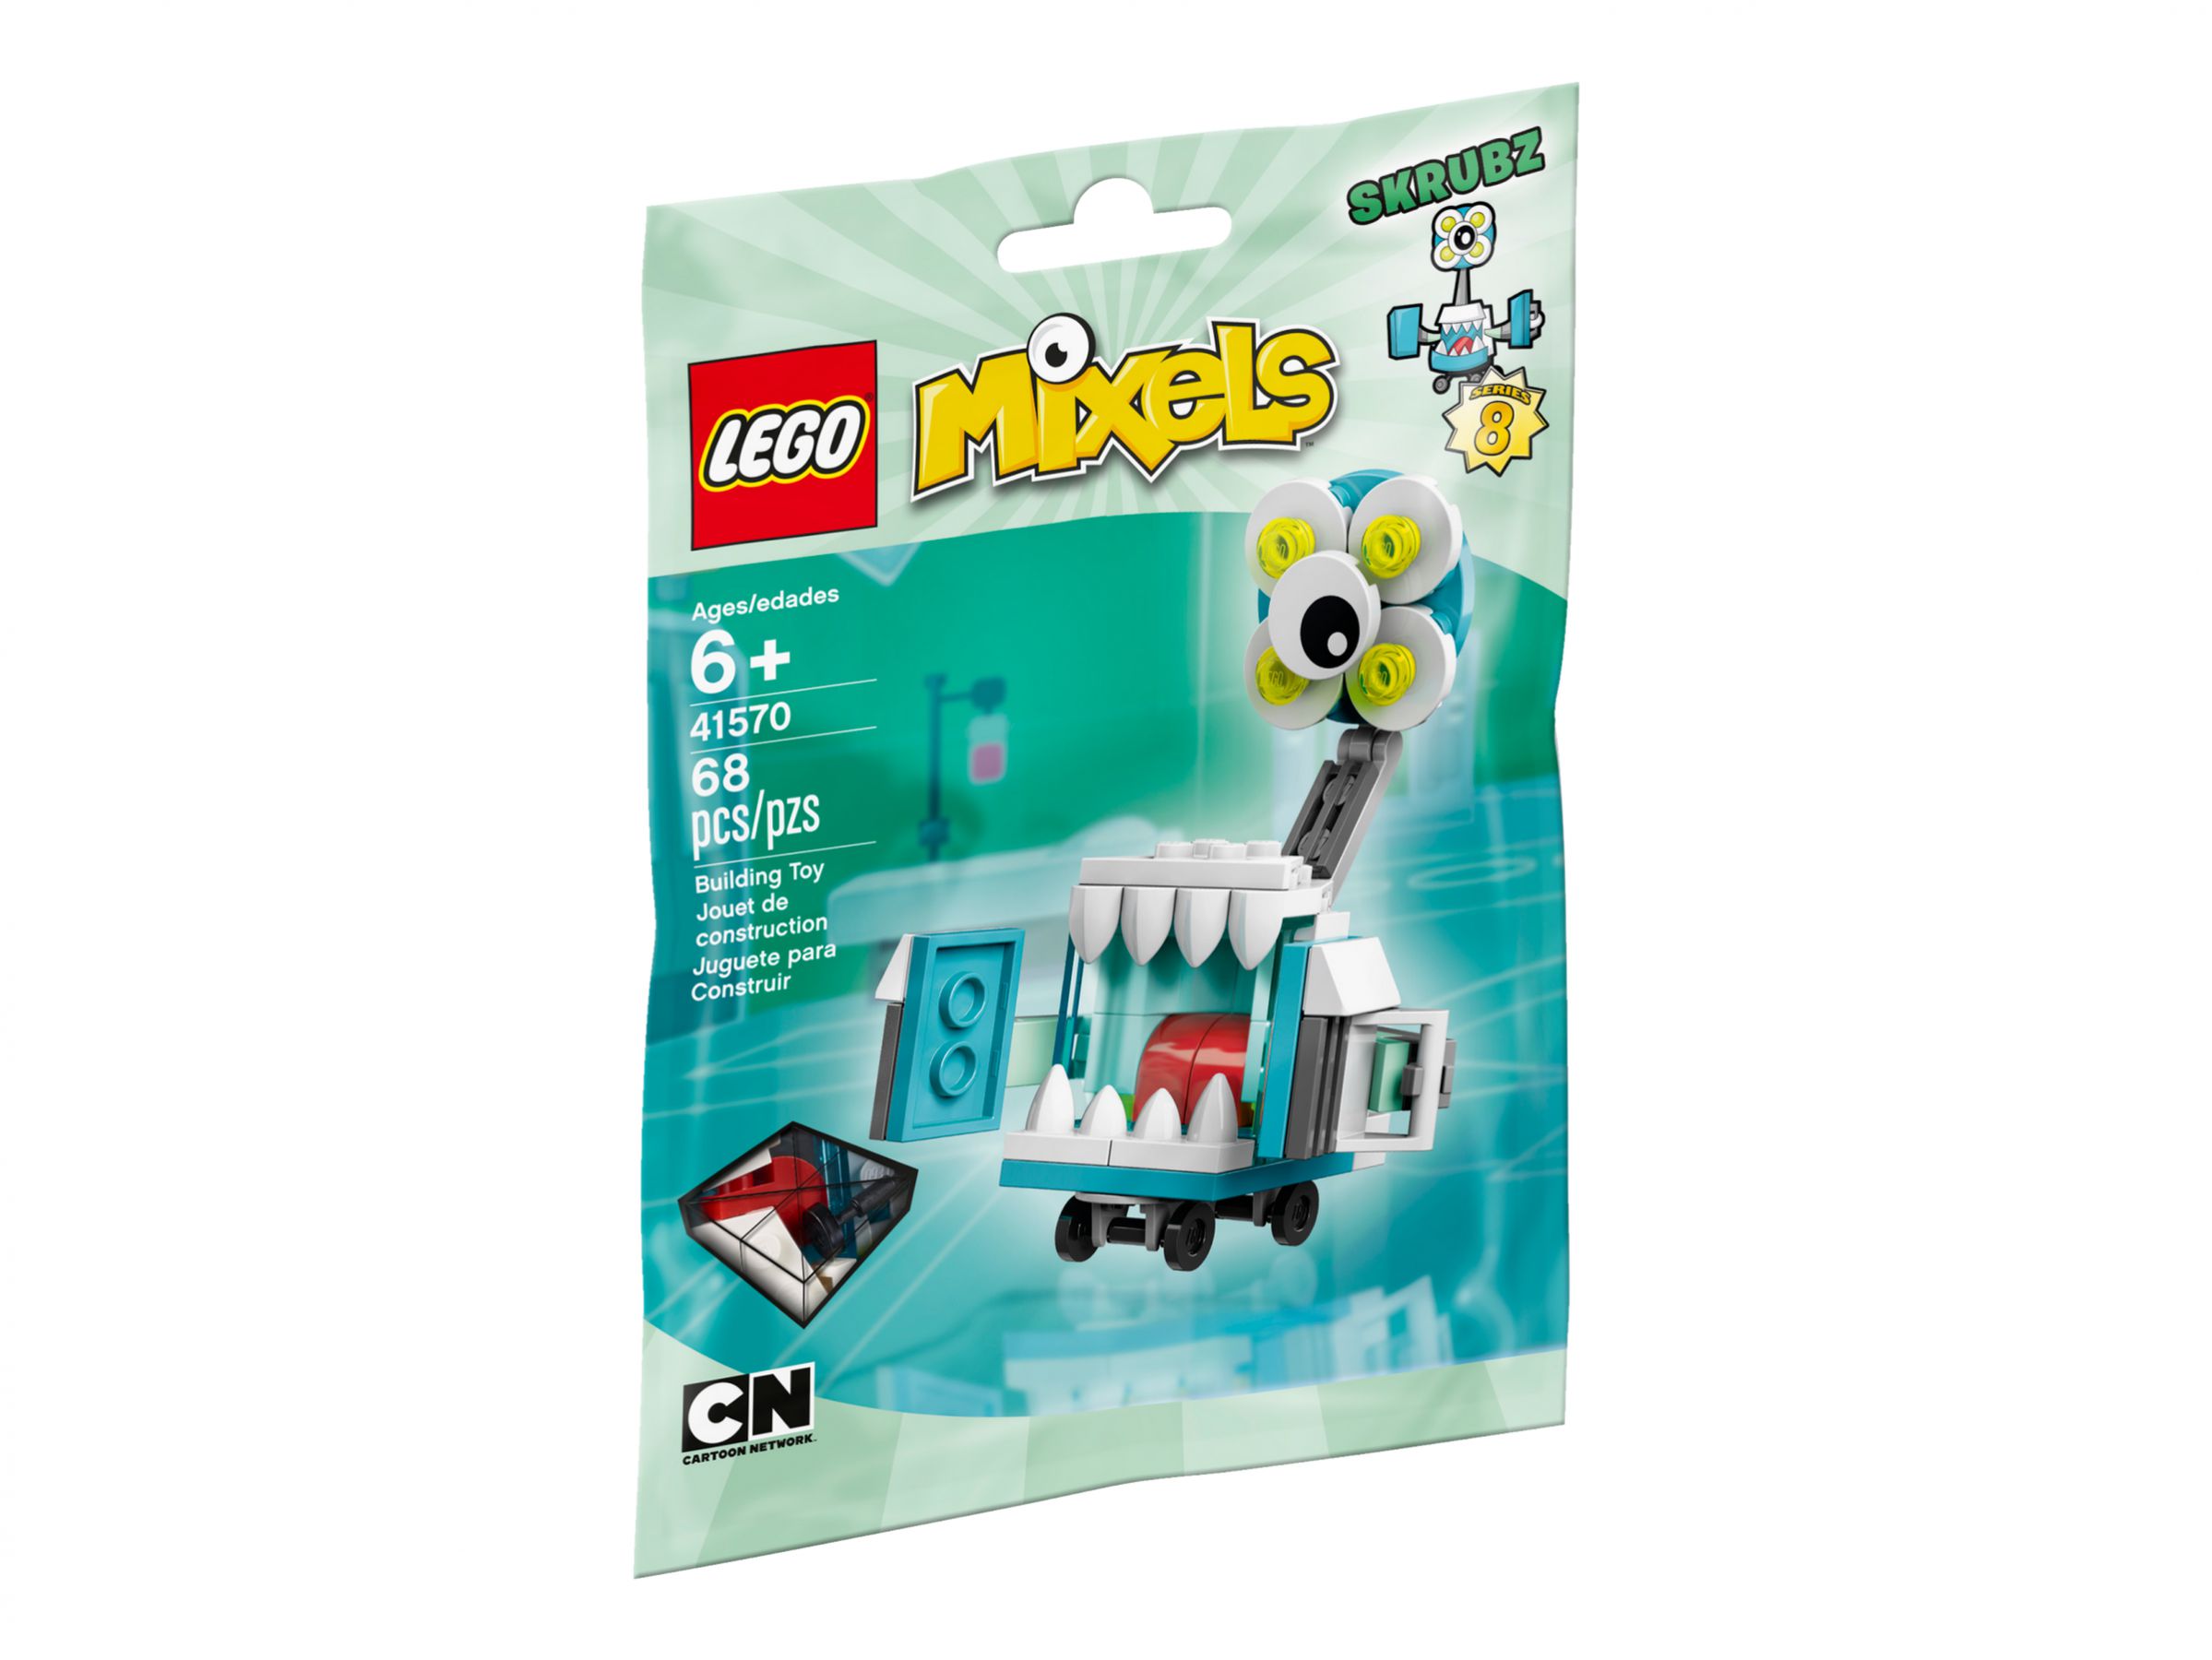 LEGO Mixels 41570 Skrubz LEGO_41570_alt1.jpg